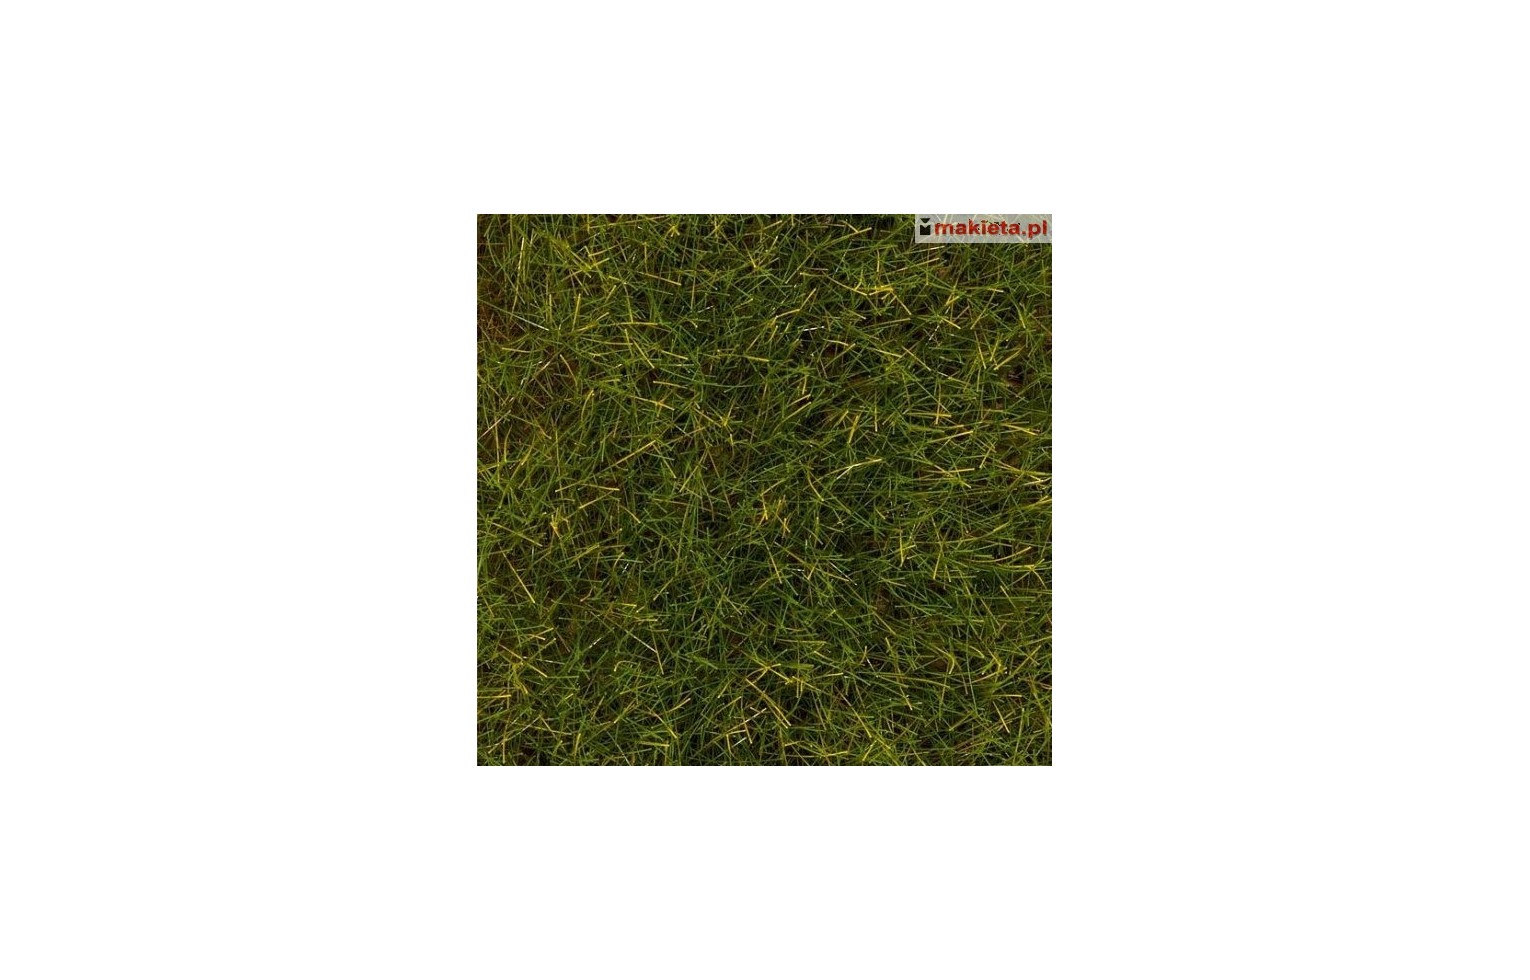 Faller 170774, Posypka trawiasta elektrostatyczna, trawy letnie, 12 mm.